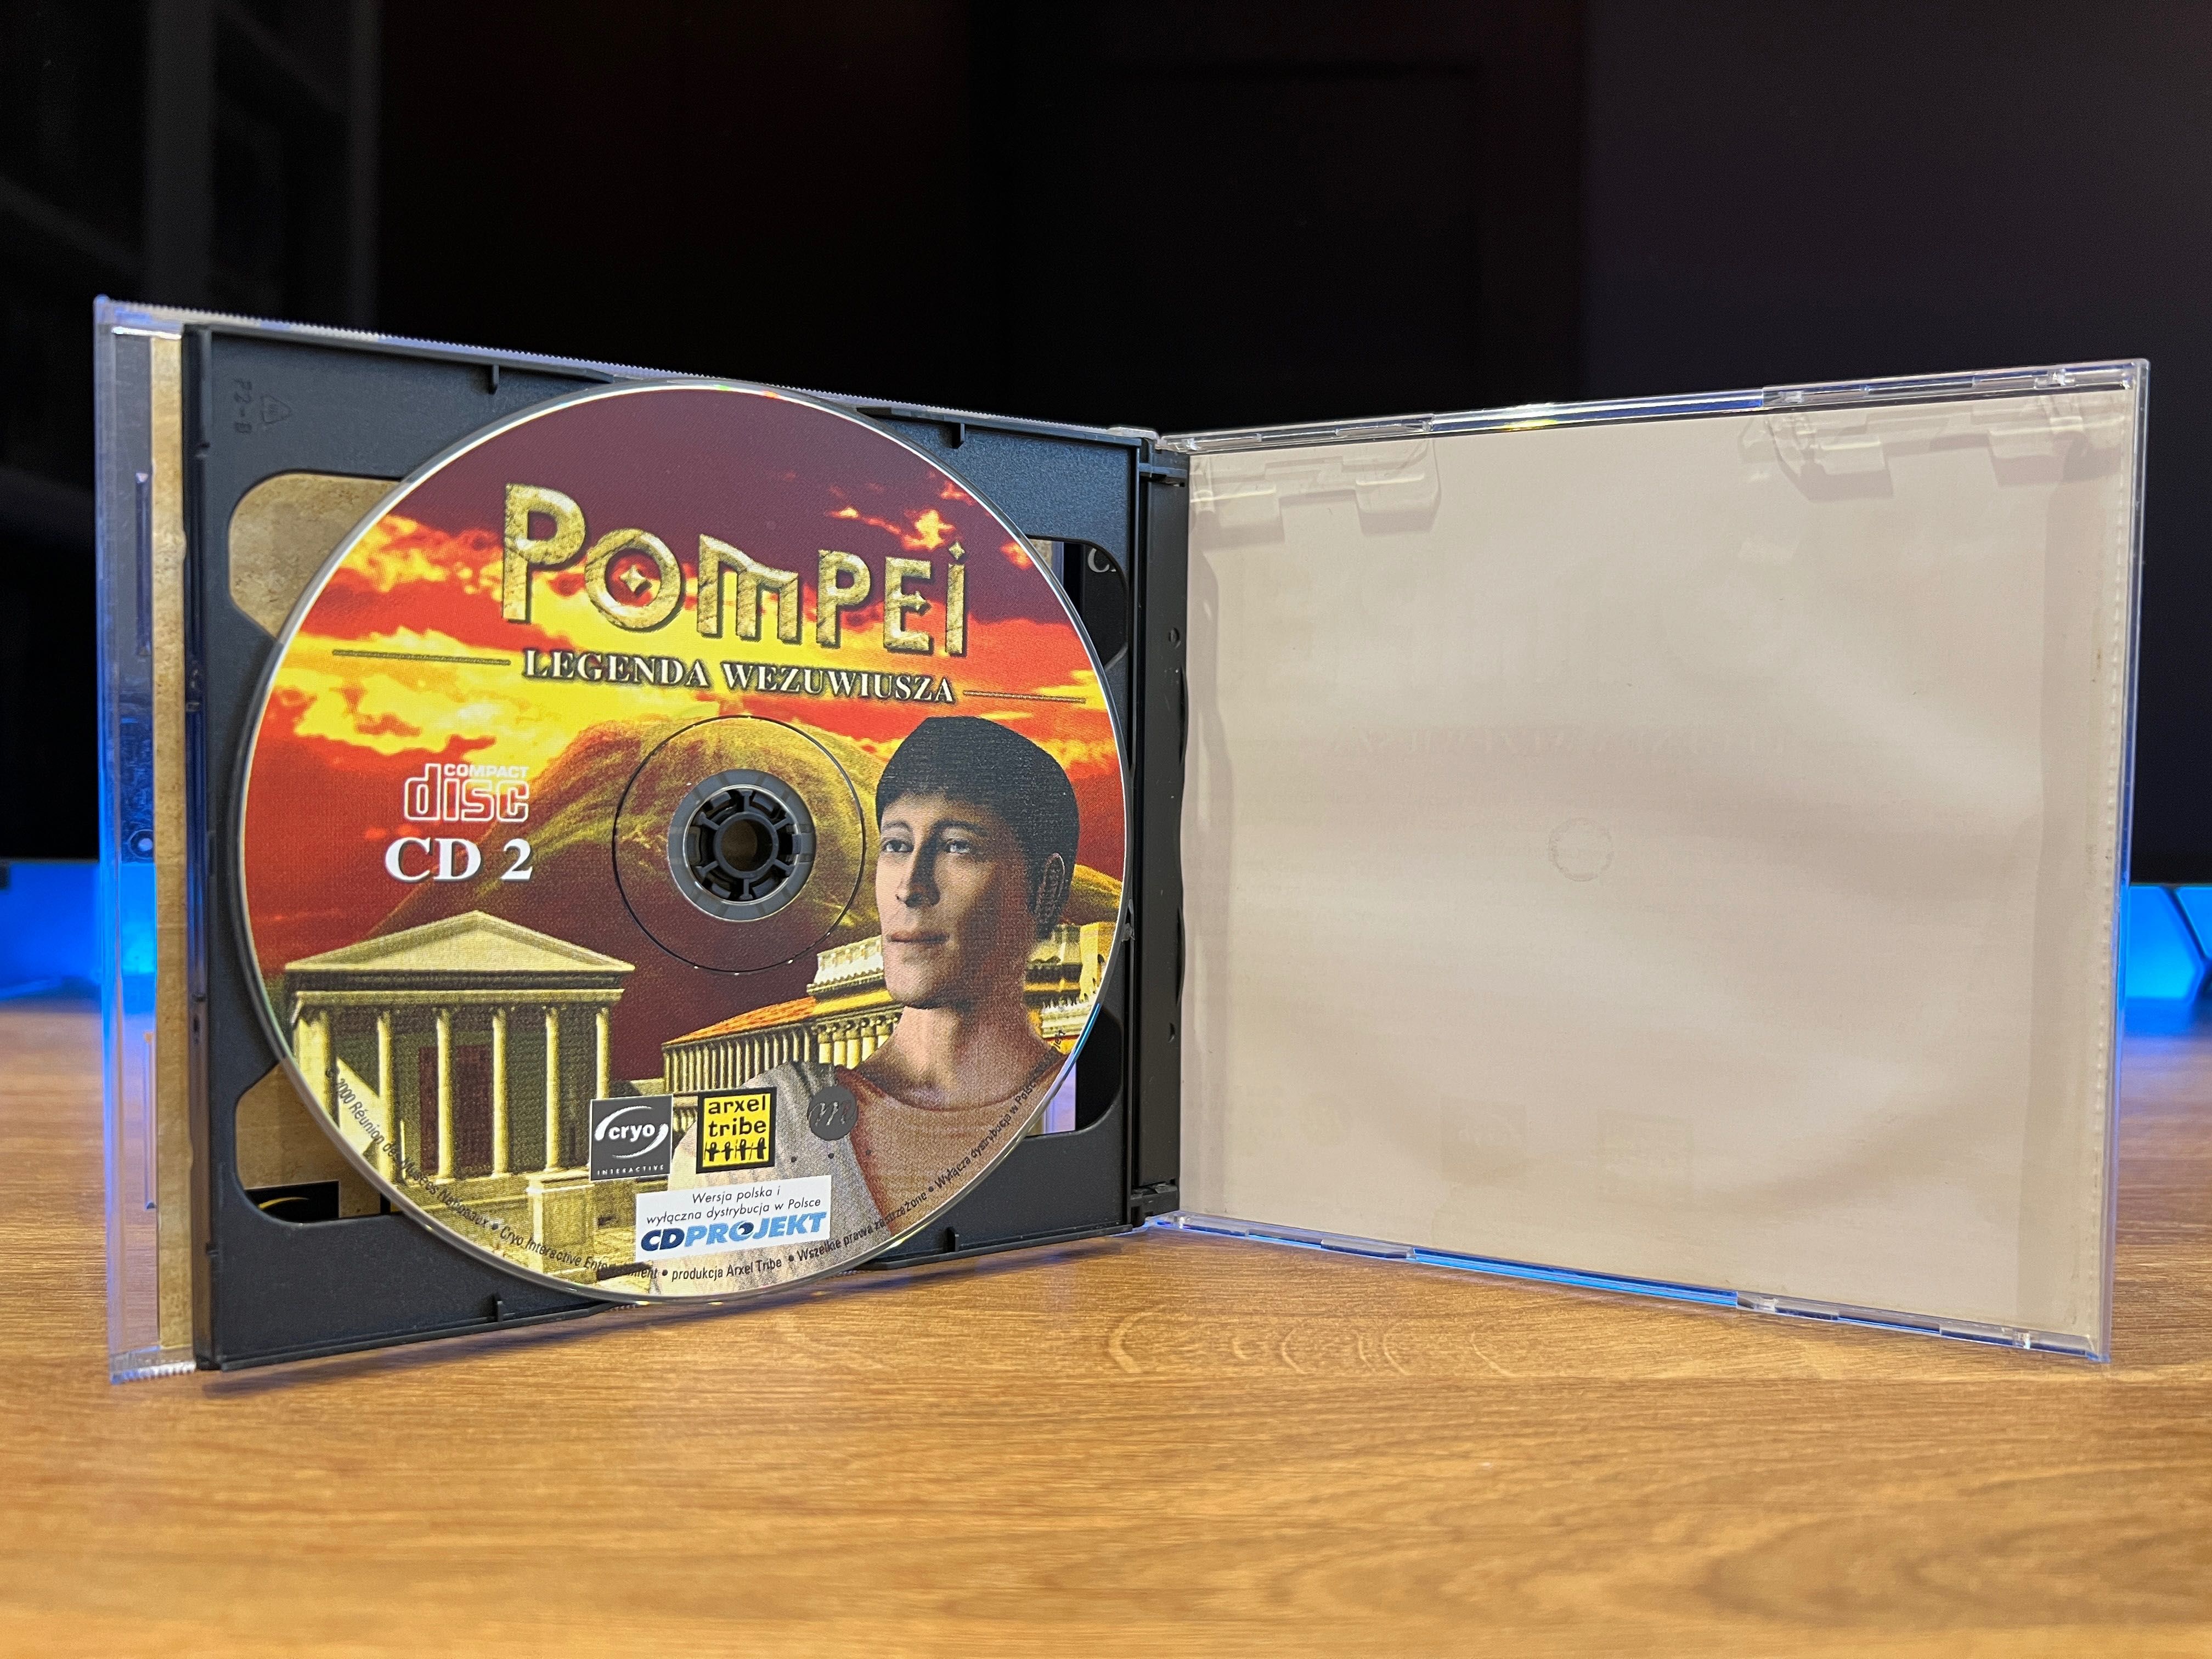 Pompei Legenda Wezuwiusza (PC PL 2000) Jewel Case premierowe wydanie